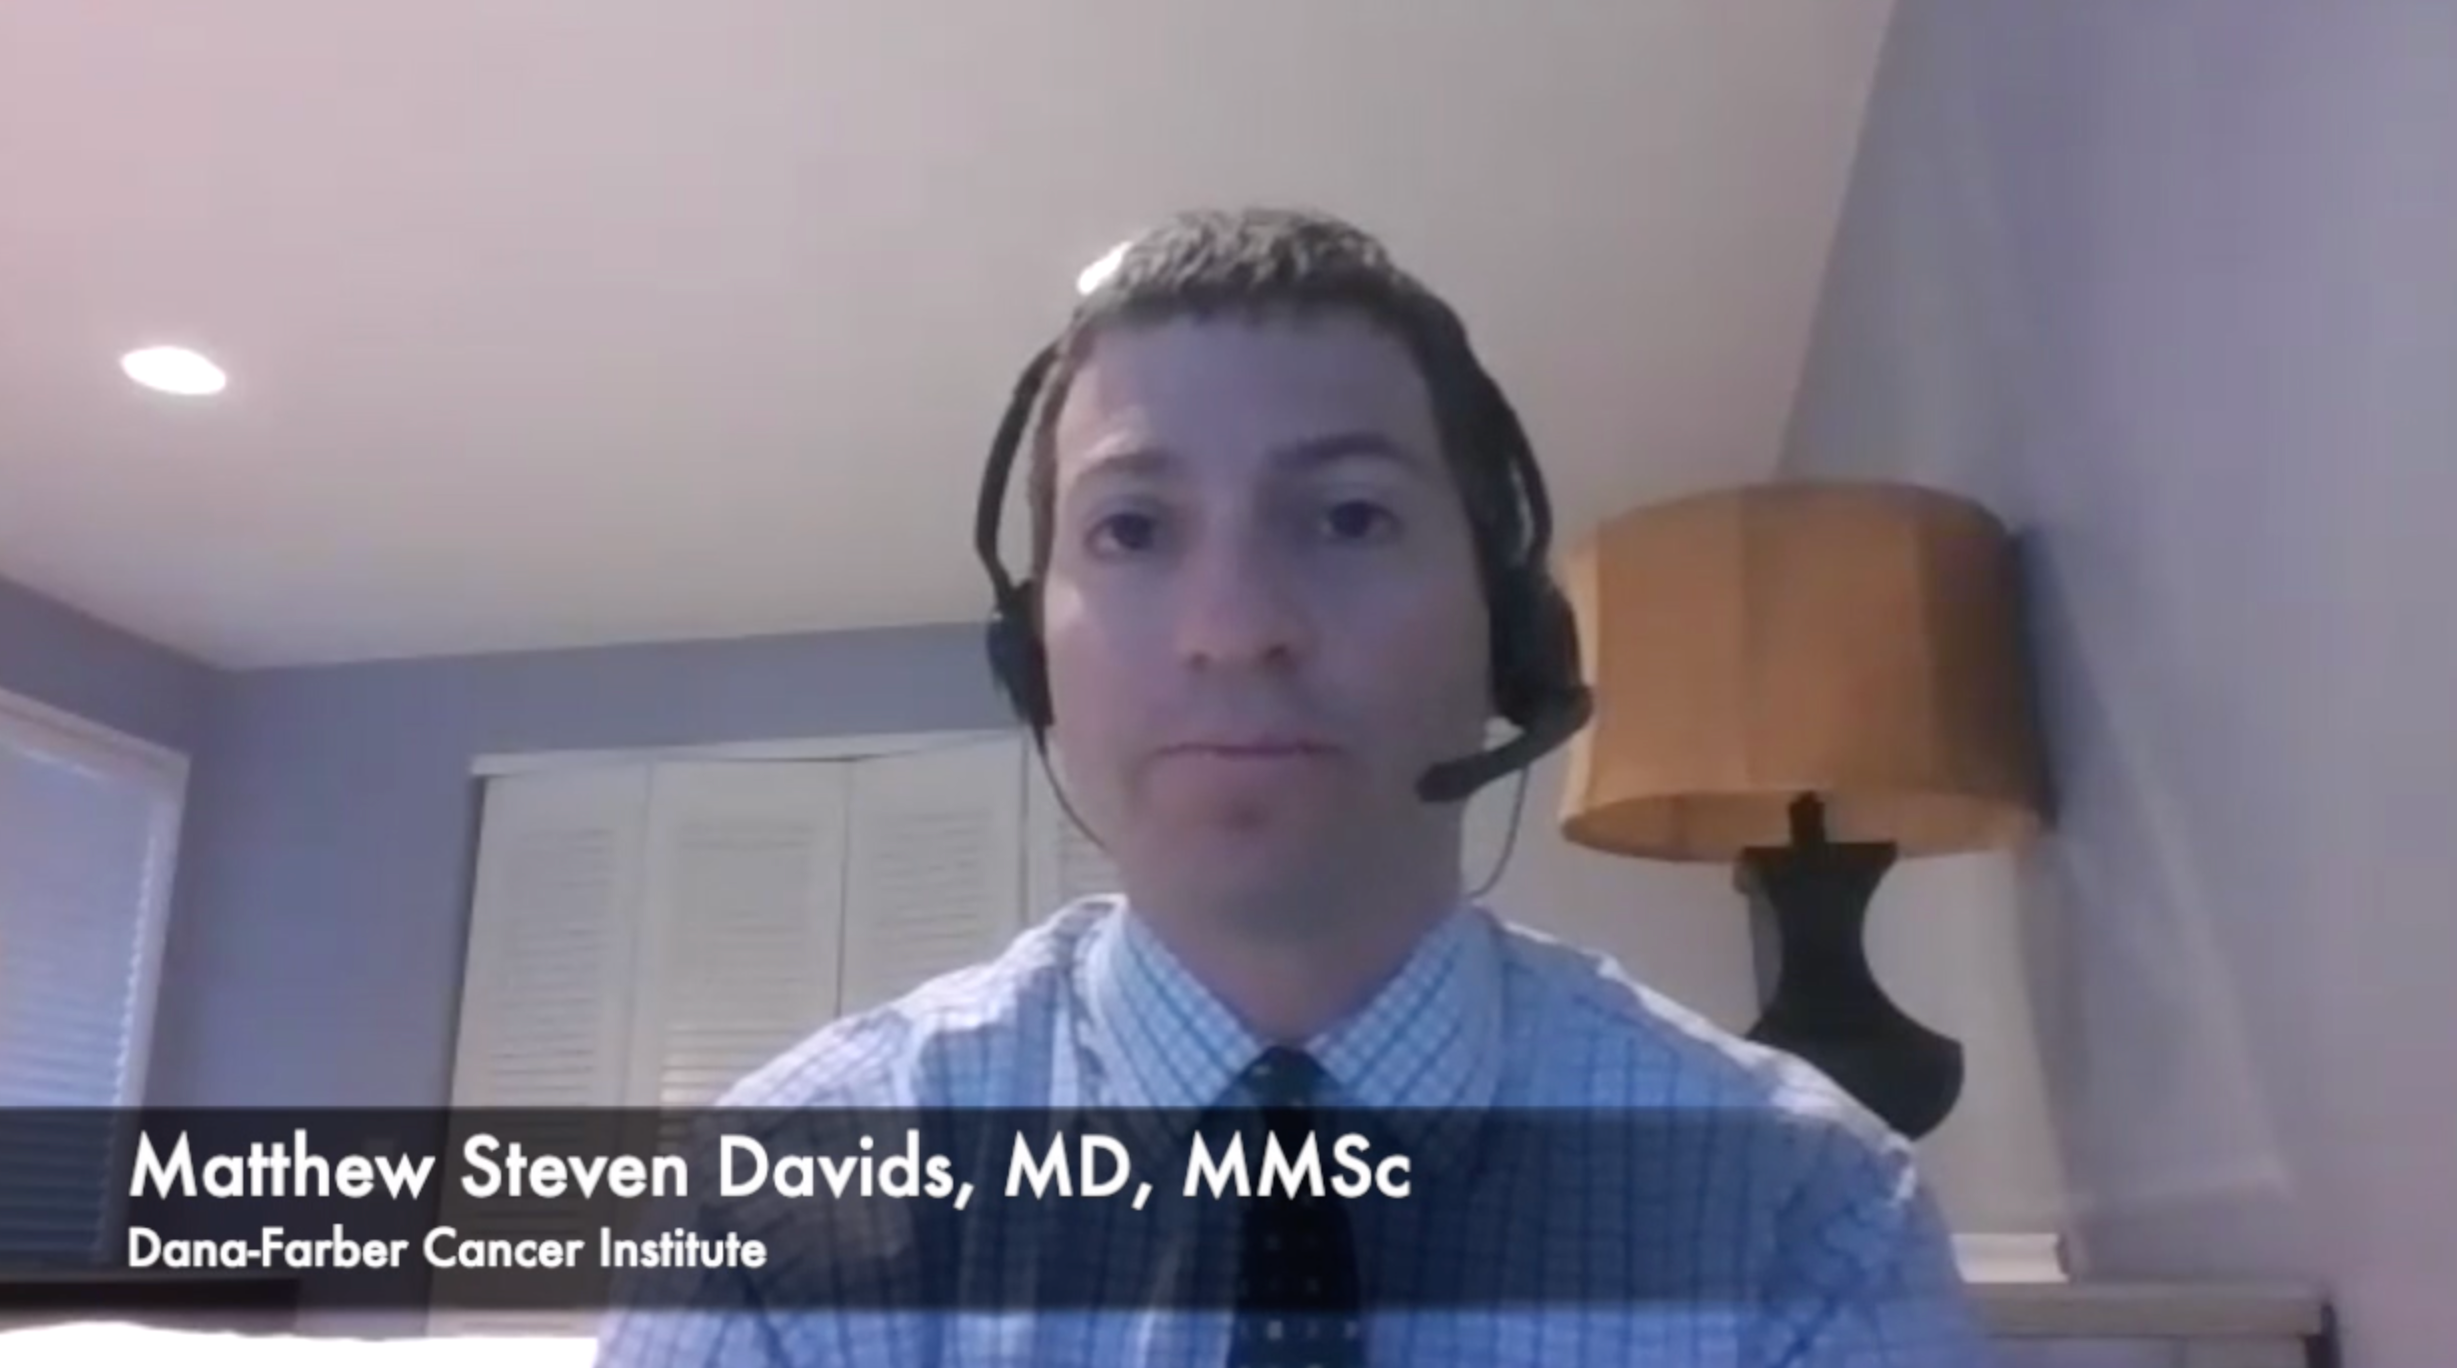 Matthew Steven Davids, MD, MMSc